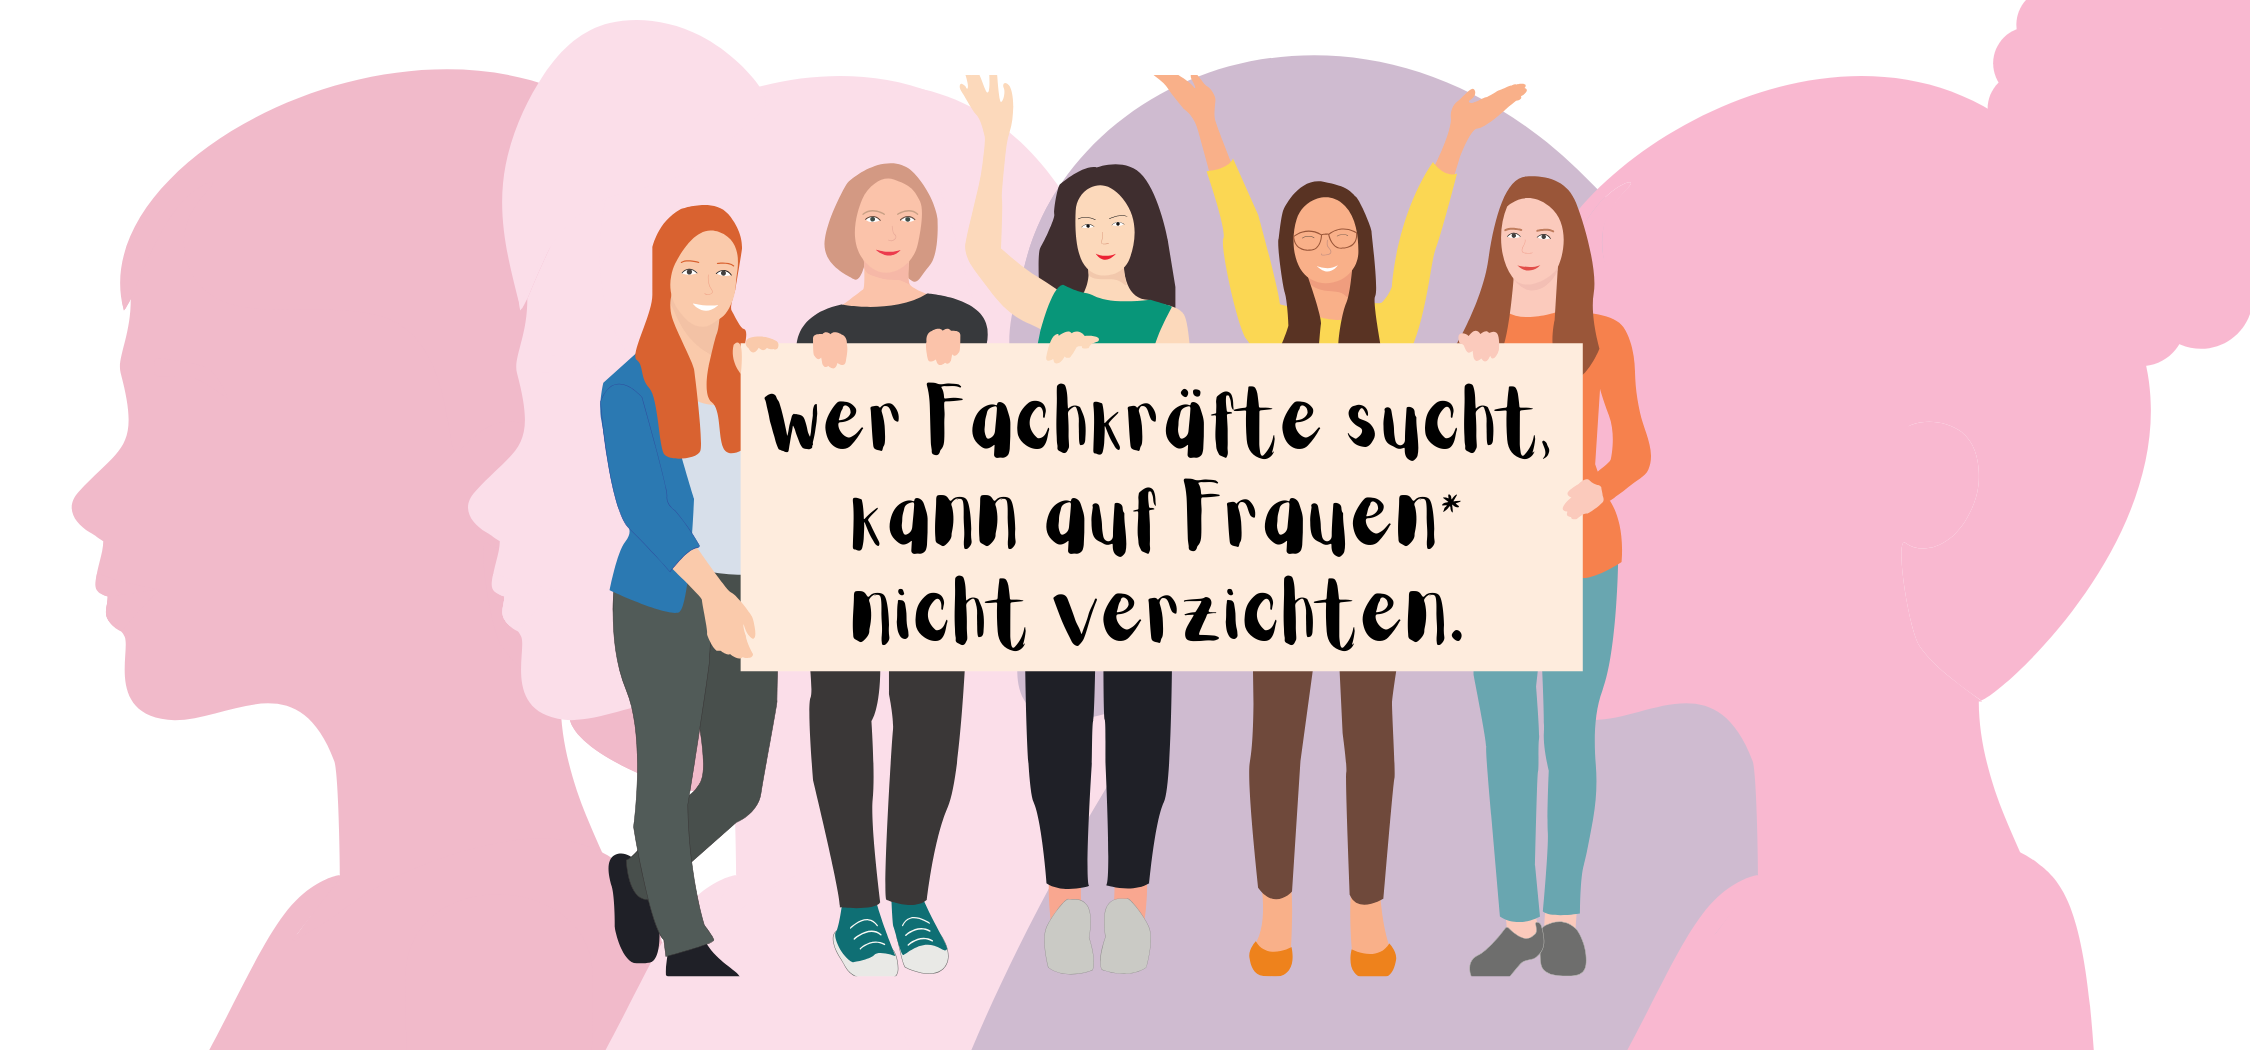 verdi-kbs.de: Wer Fachkräfte sucht, kann auf Frauen* nicht verzichten